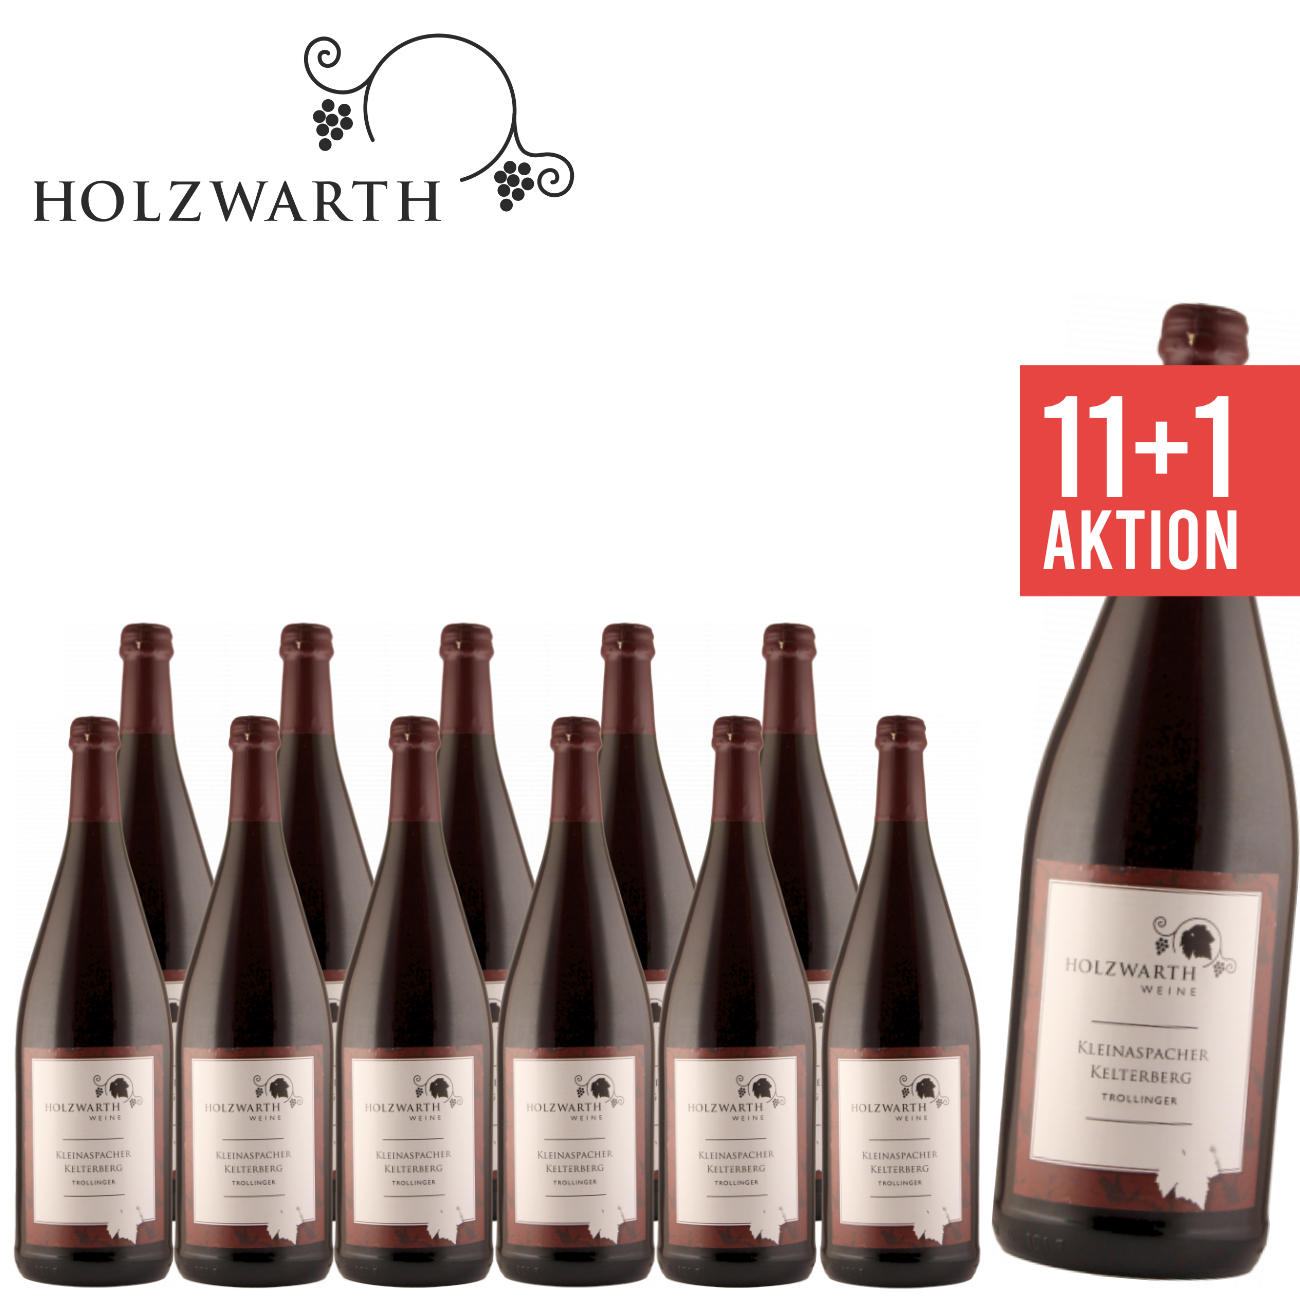 Holzwarth Weine Aspach, 11+1 Trollinger halbtrocken 1,0 L Kleinaspacher Kelterberg Weinpaket, Angebot, versandkostenfrei, Rotwein